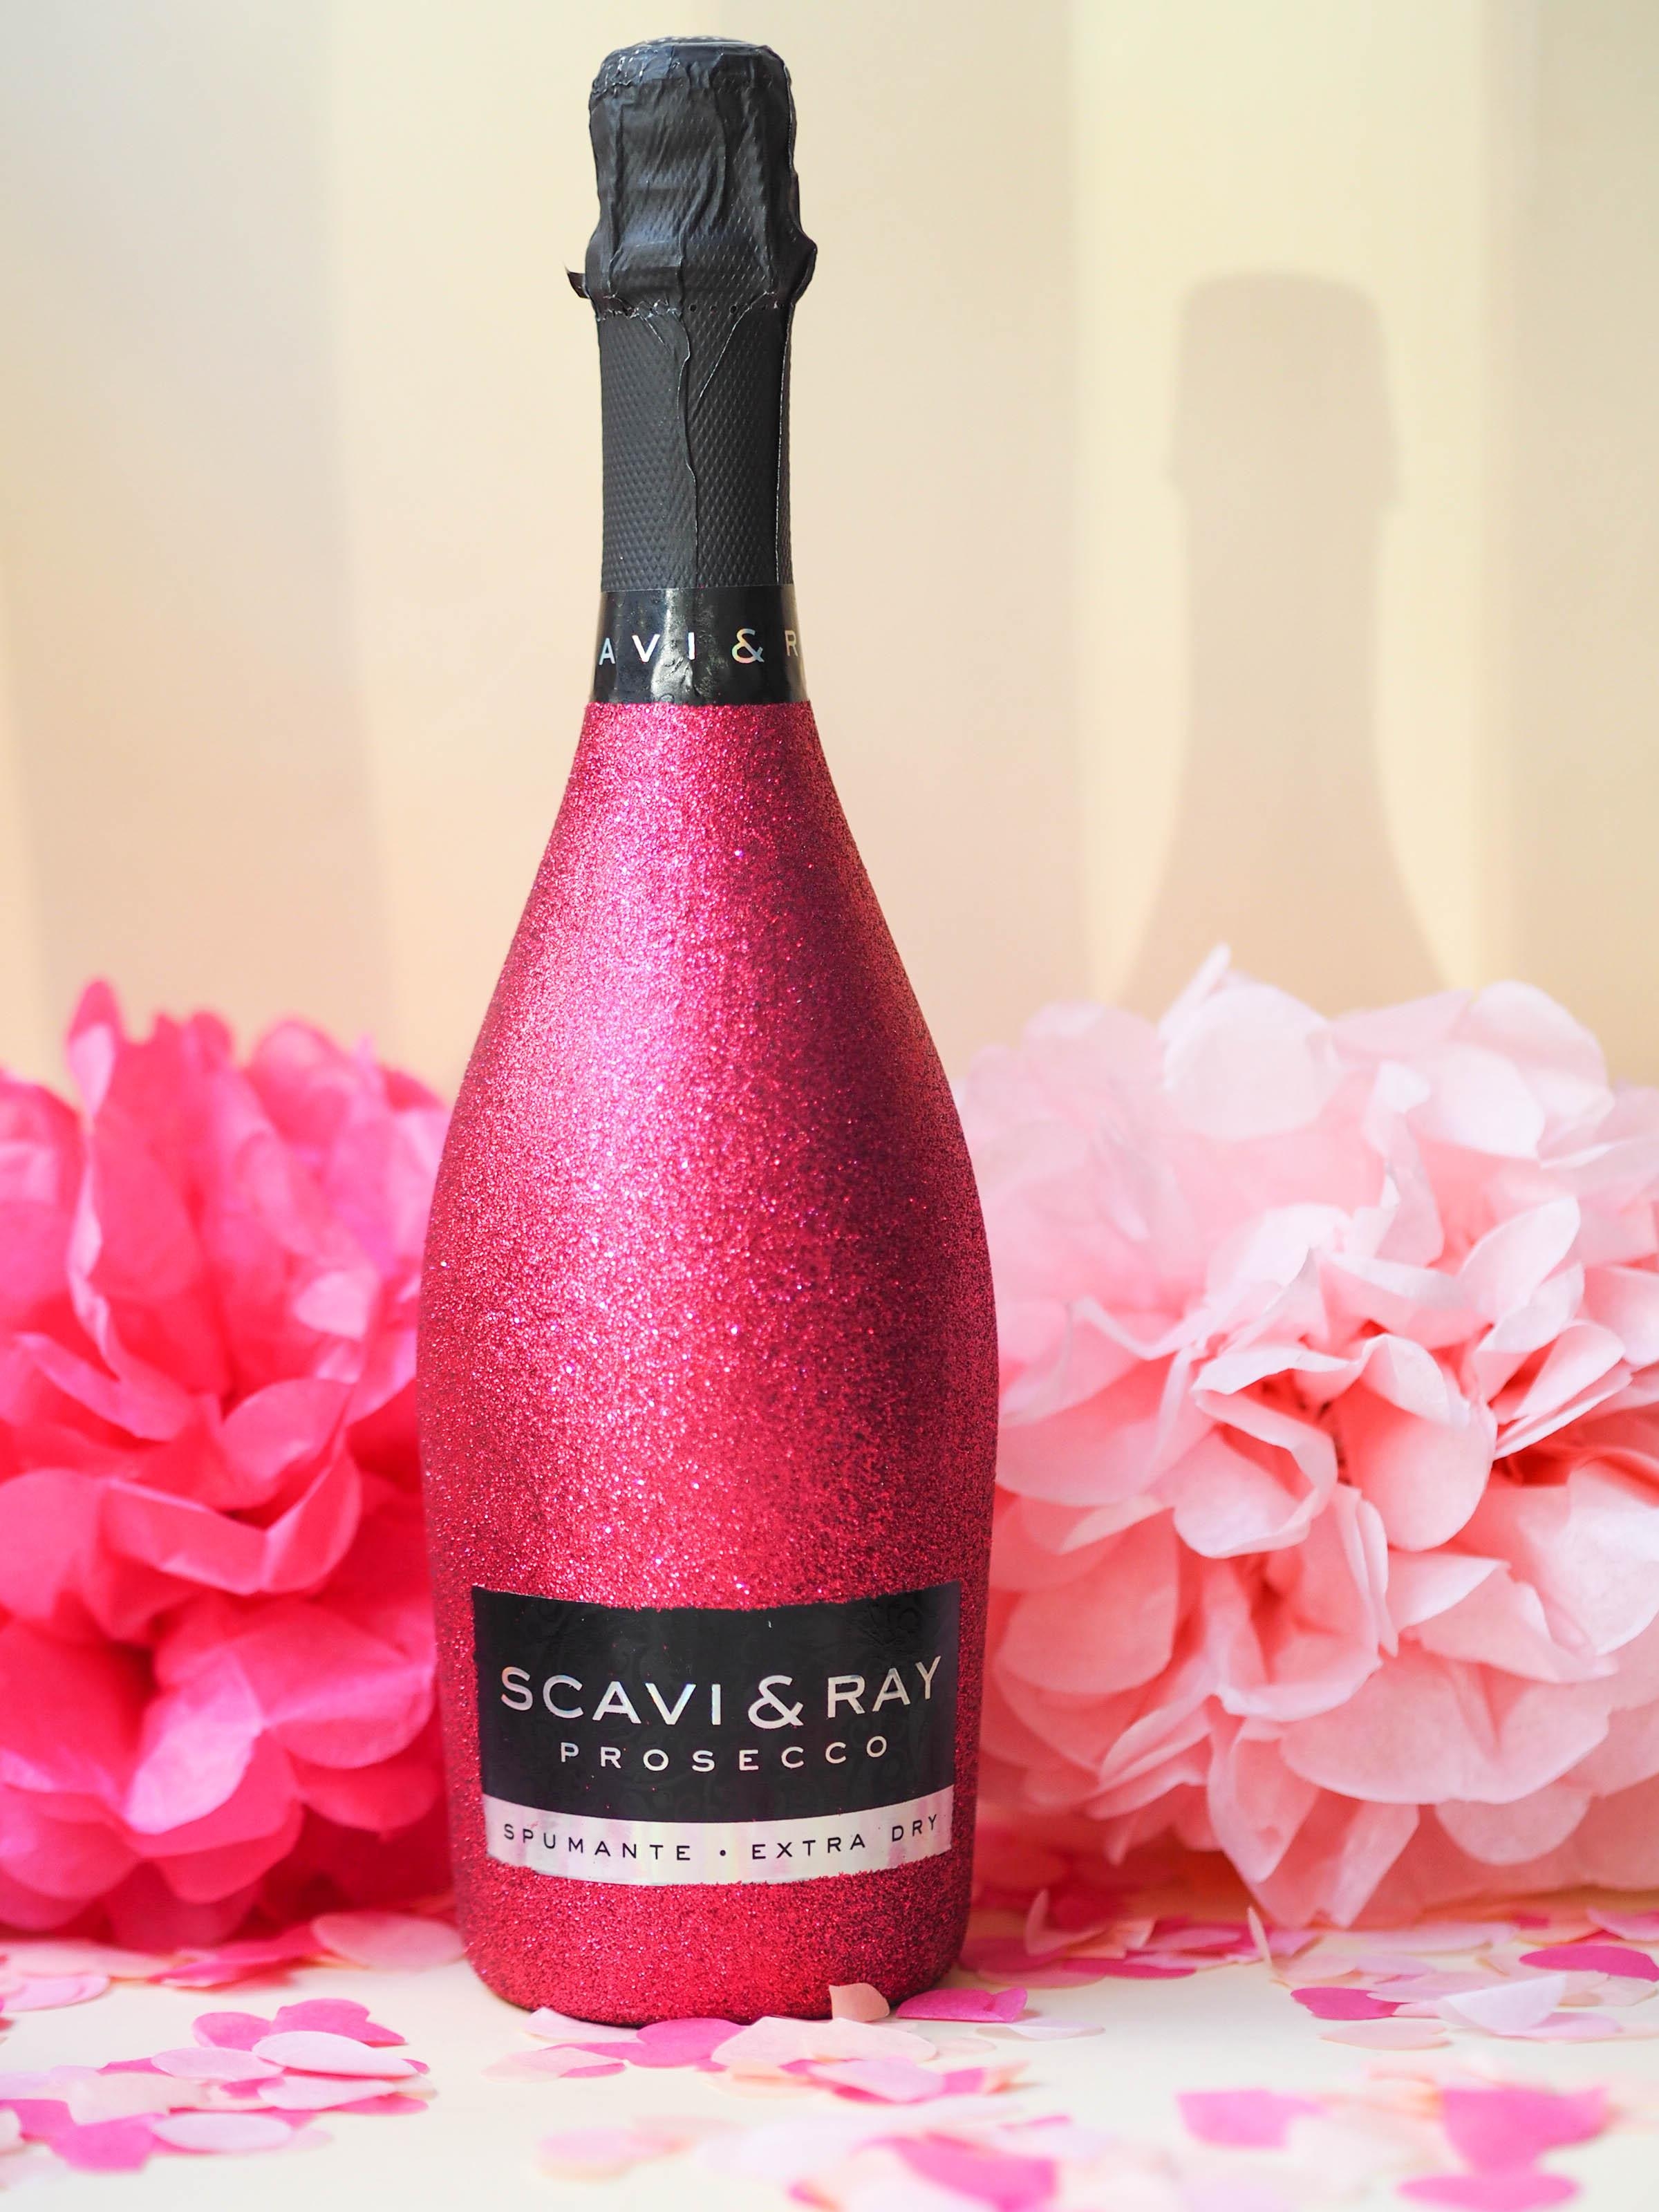 Das Rezept zum perfekten Valentinsgeschenk? Enthält Prosecco, Glitzer & Pink 💝 #happyvalentine #scaviray